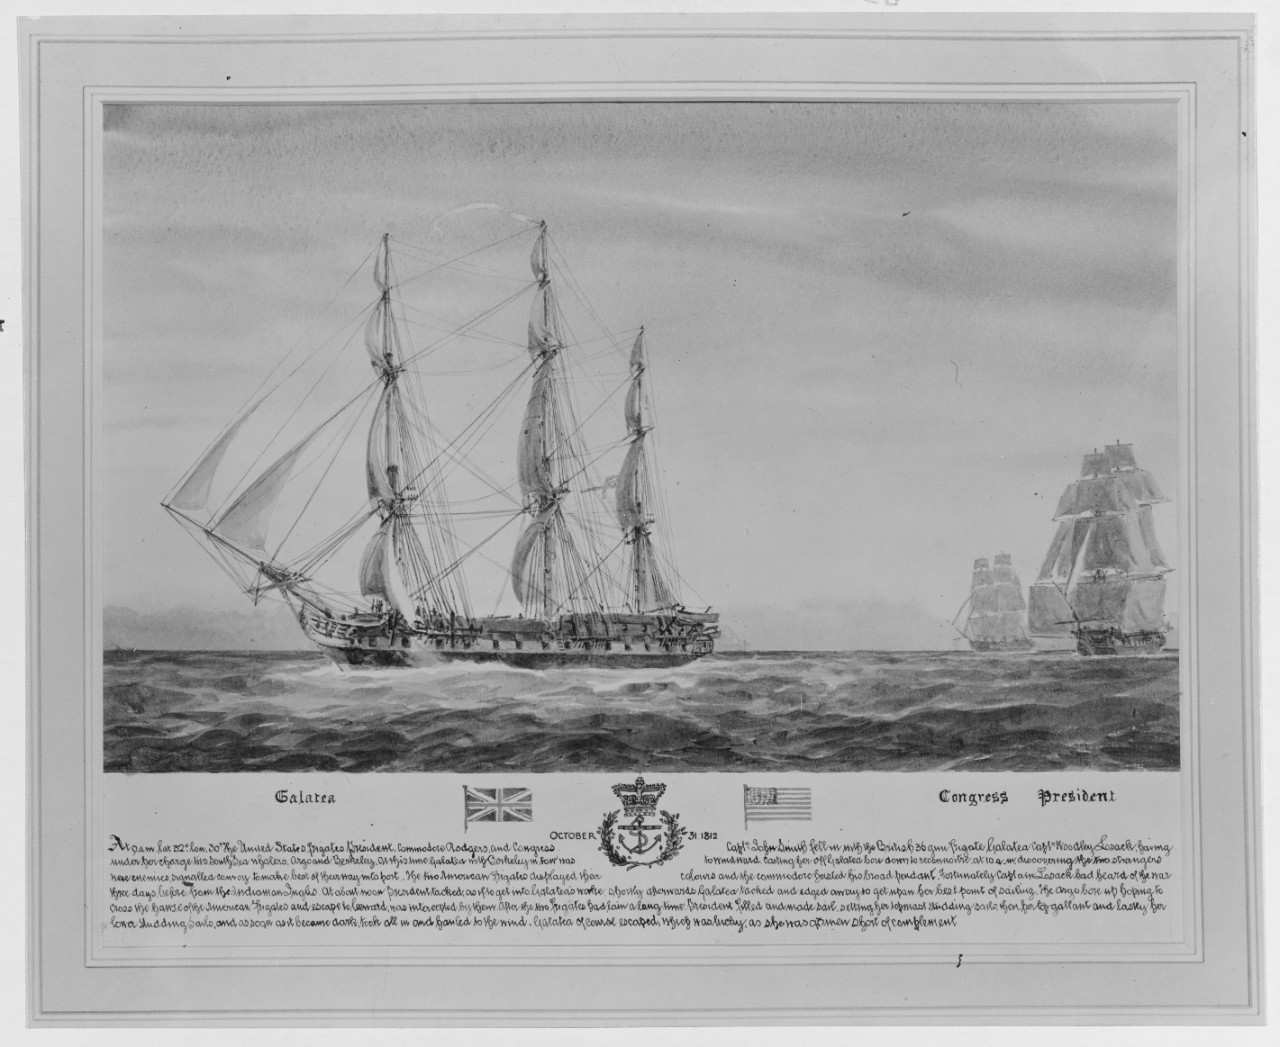 Battle between HMS GALATEA, USS CONGRESS, and USS PRESIDENT, 31 October 1812